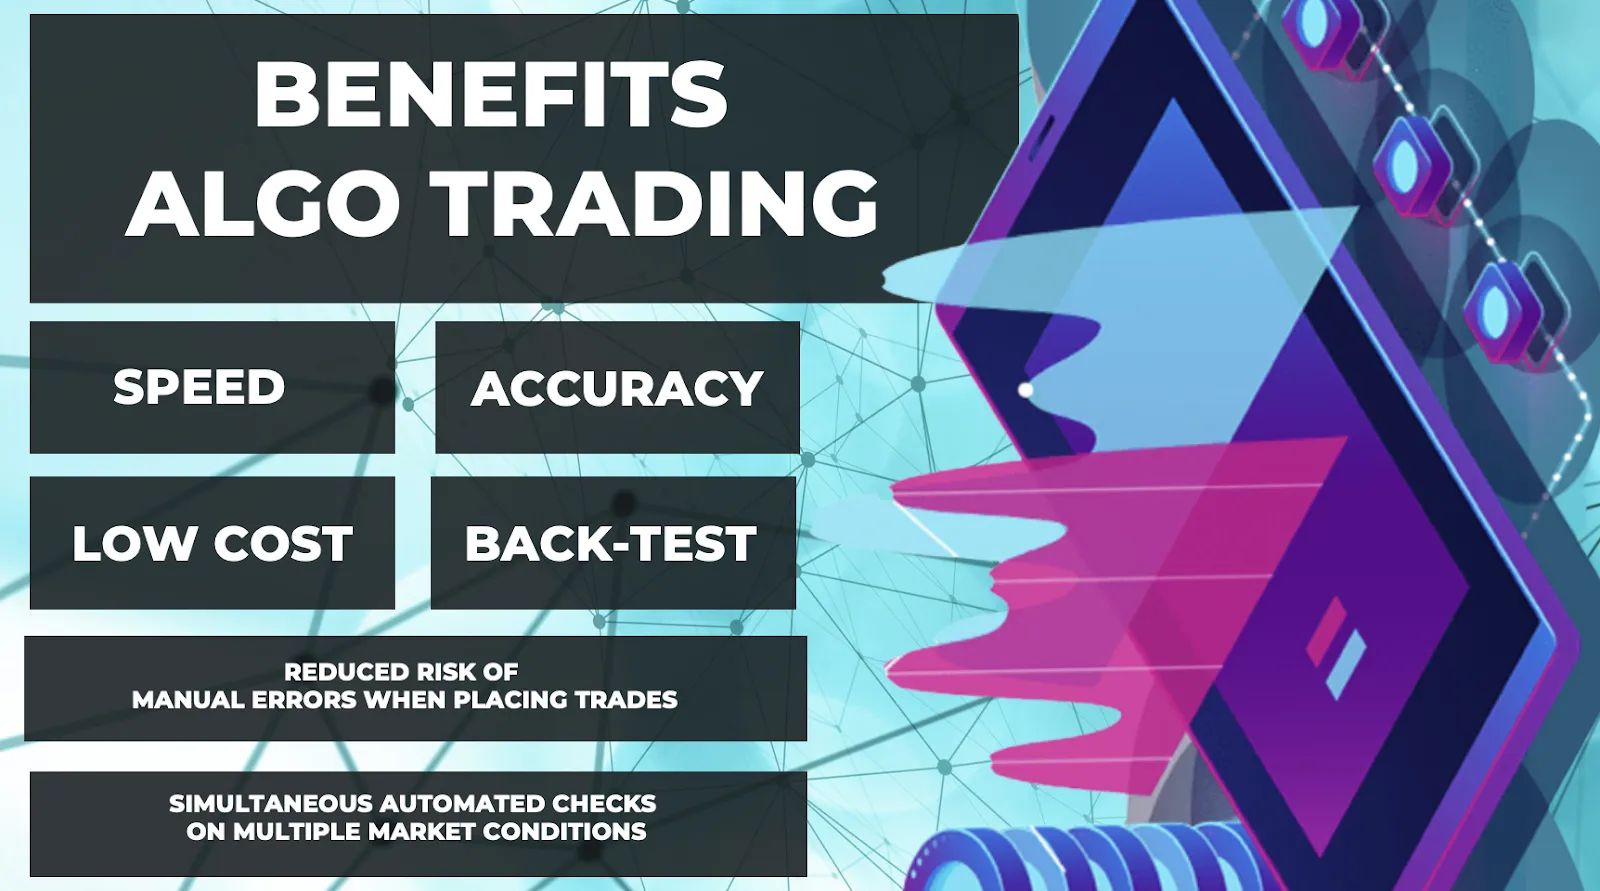 Benefits of Algo Trading